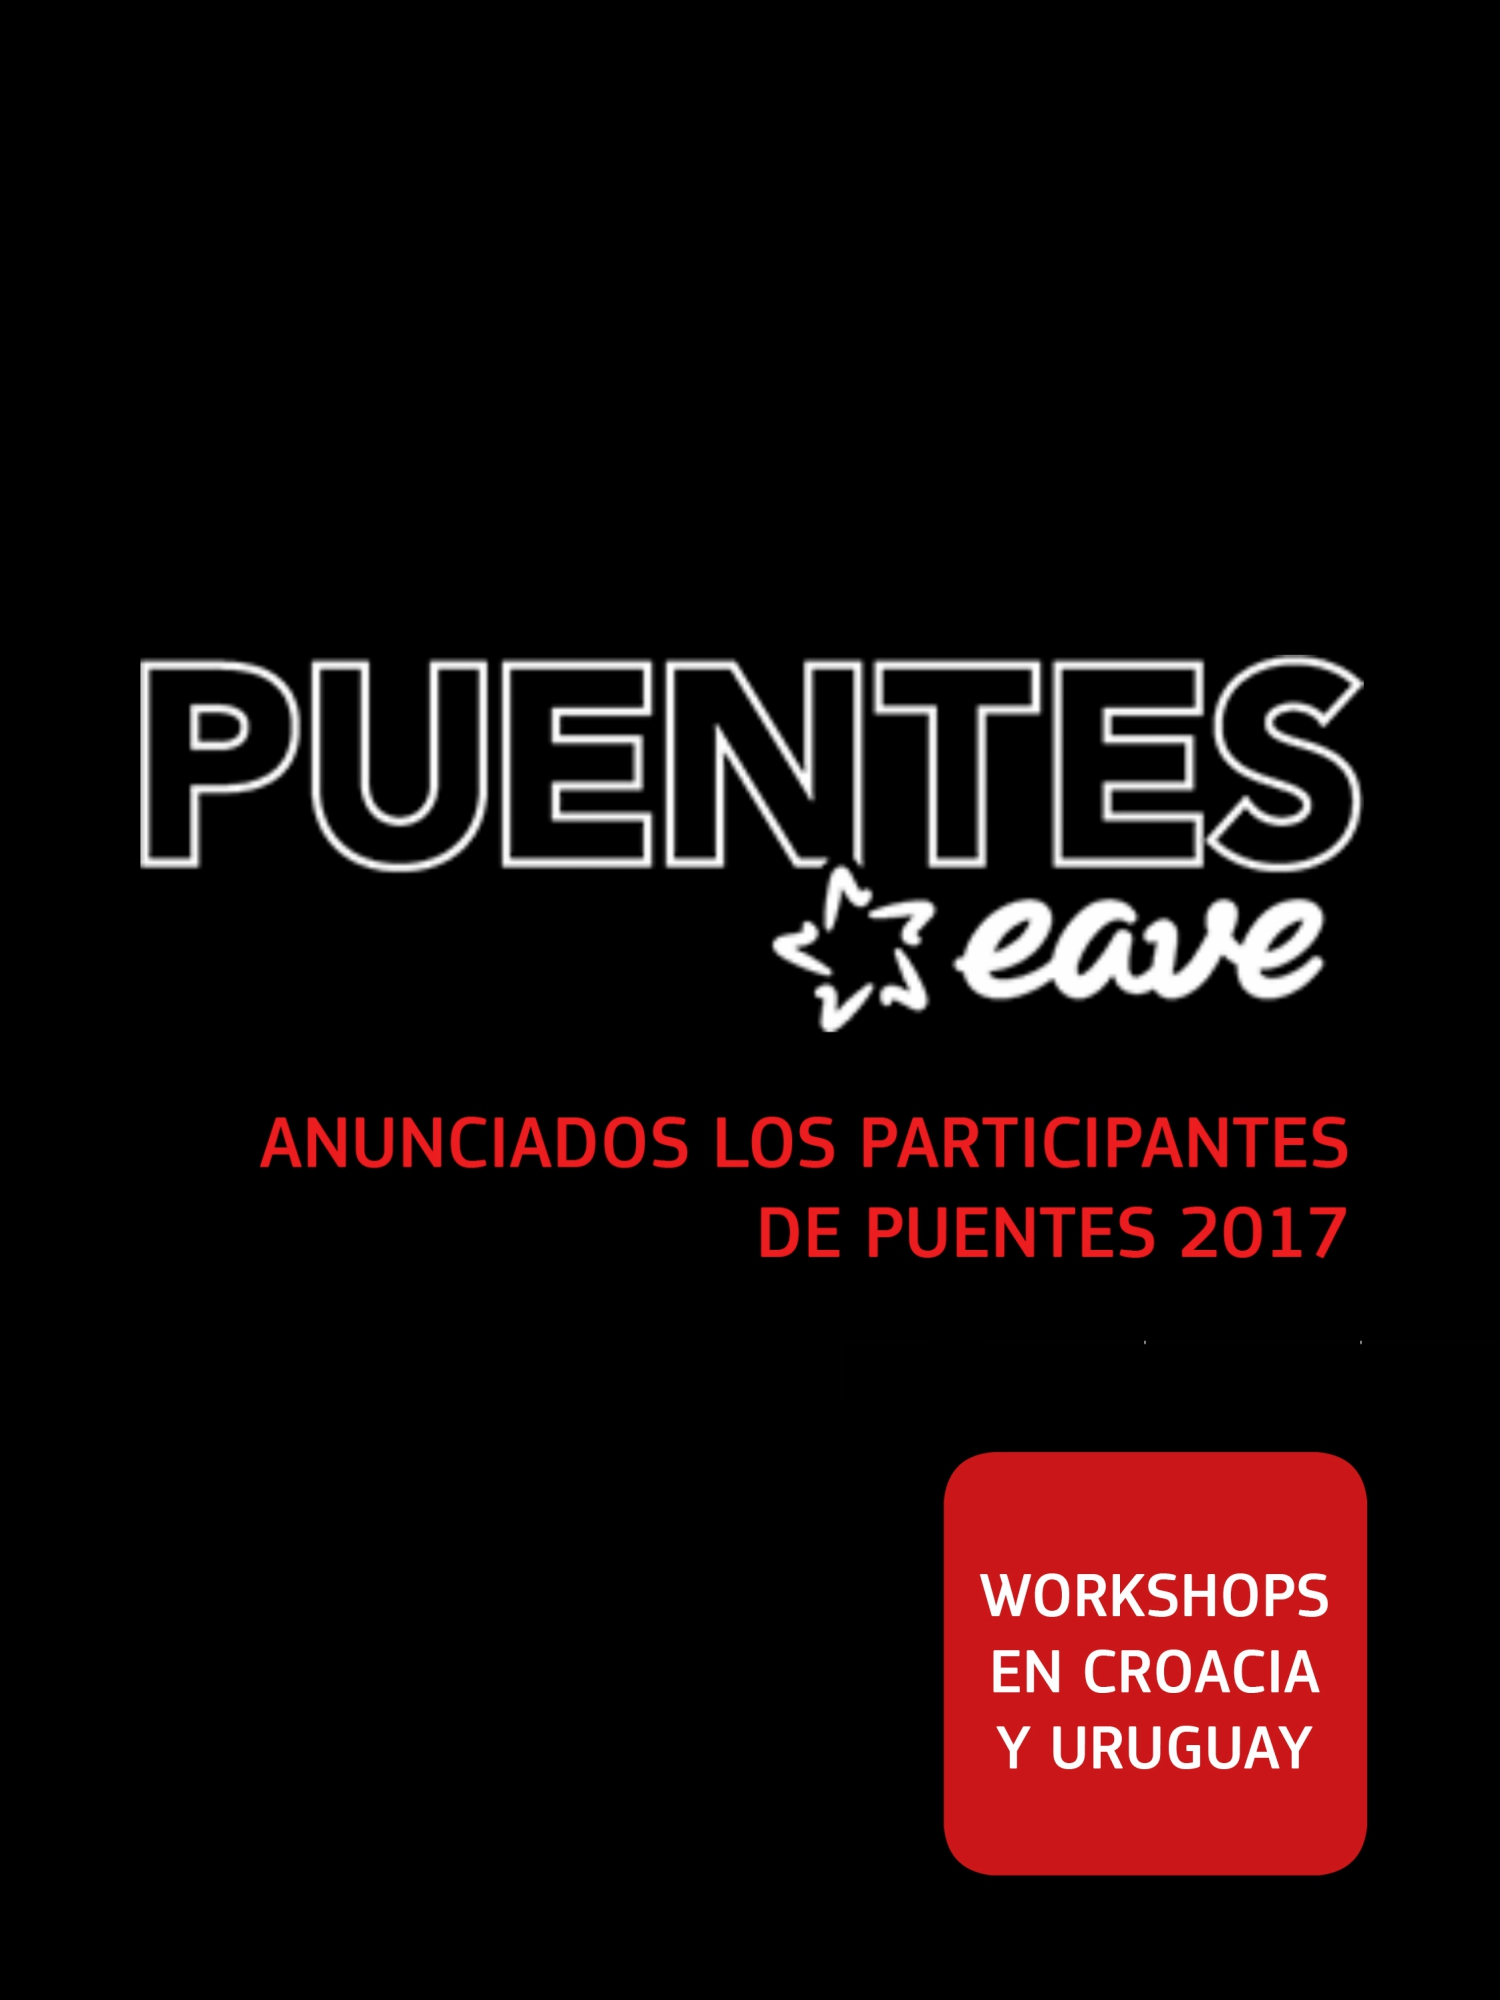 EAVE Puentes Participantes 2017